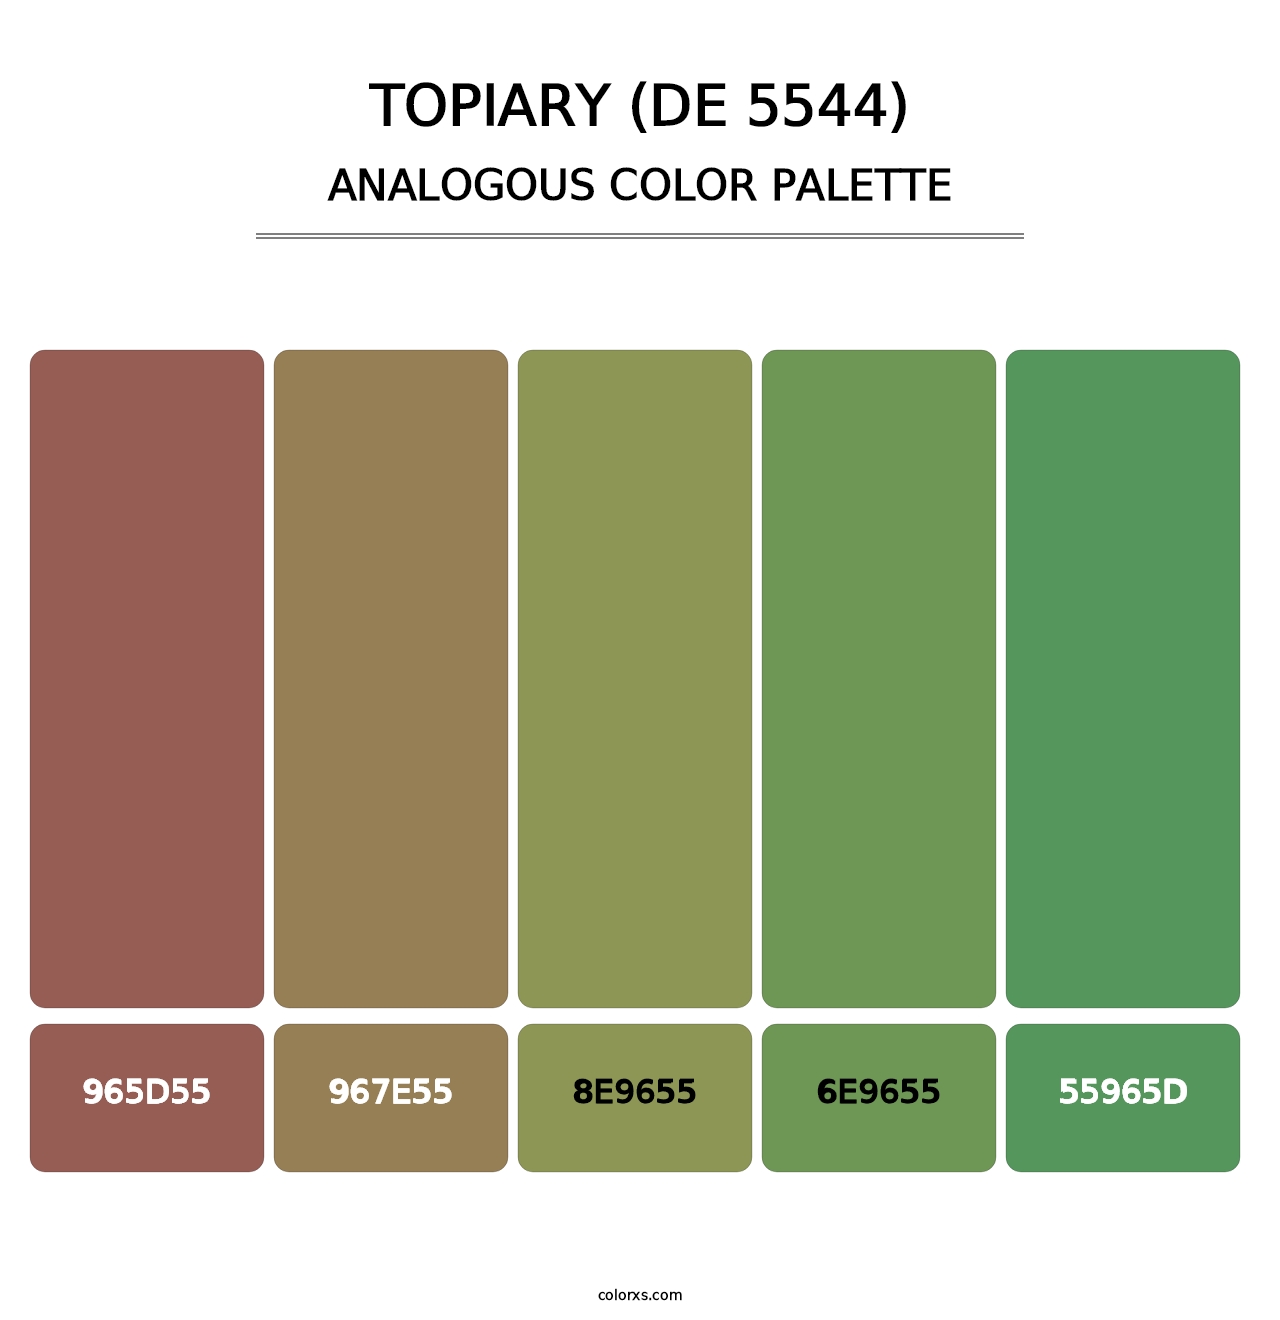 Topiary (DE 5544) - Analogous Color Palette